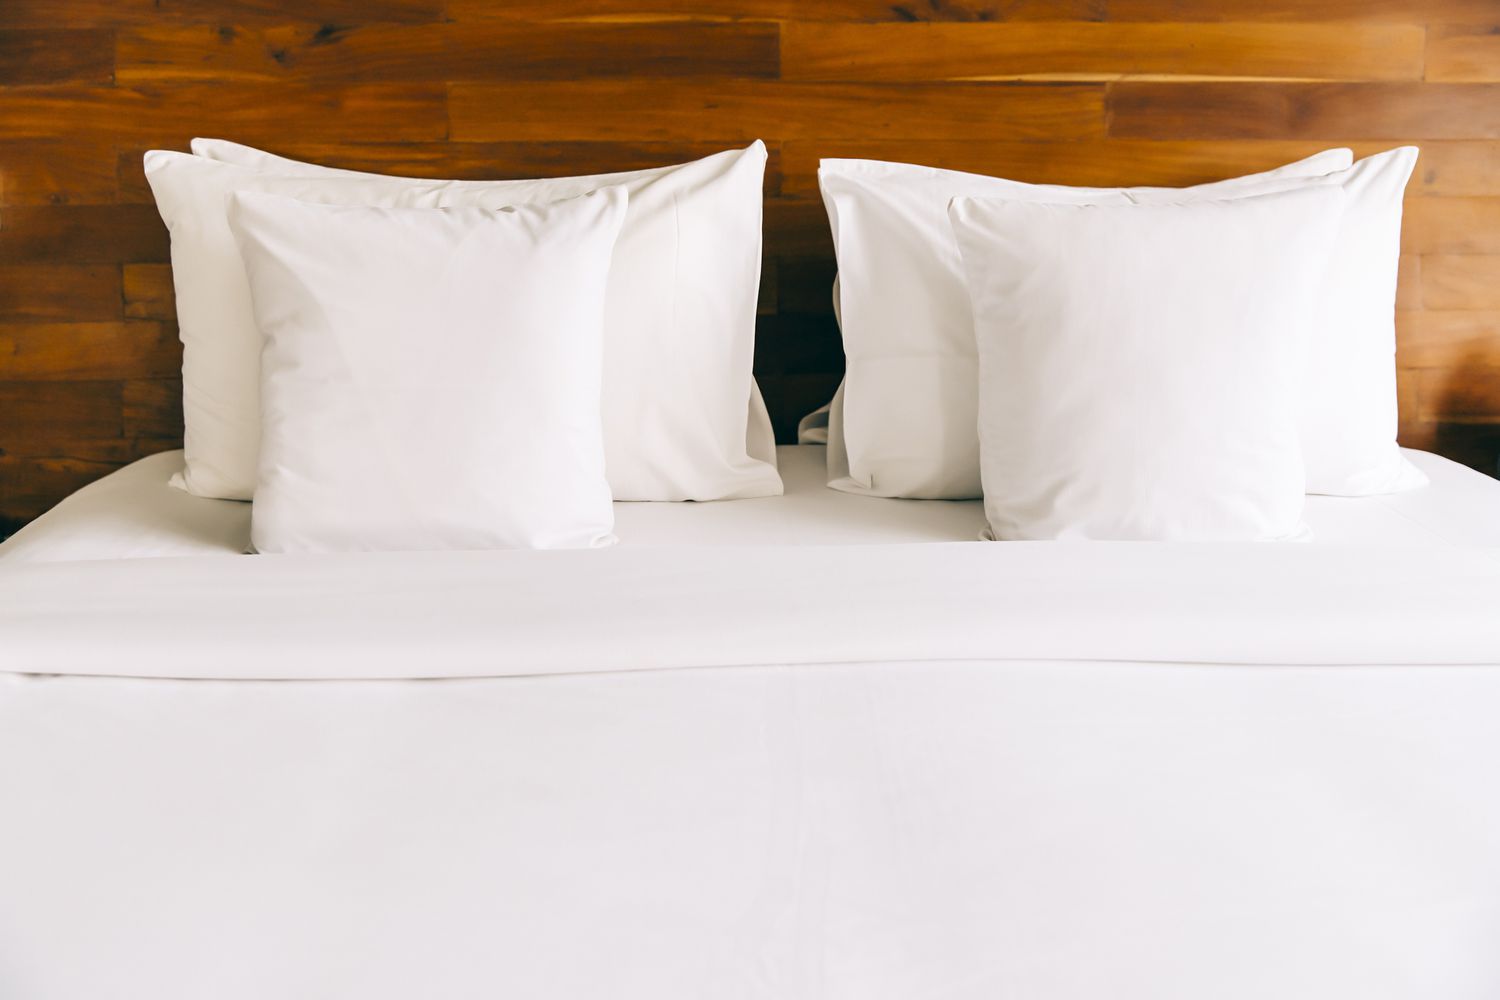 Una cama hecha con sábanas y almohadas blancas contra un cabecero de madera.